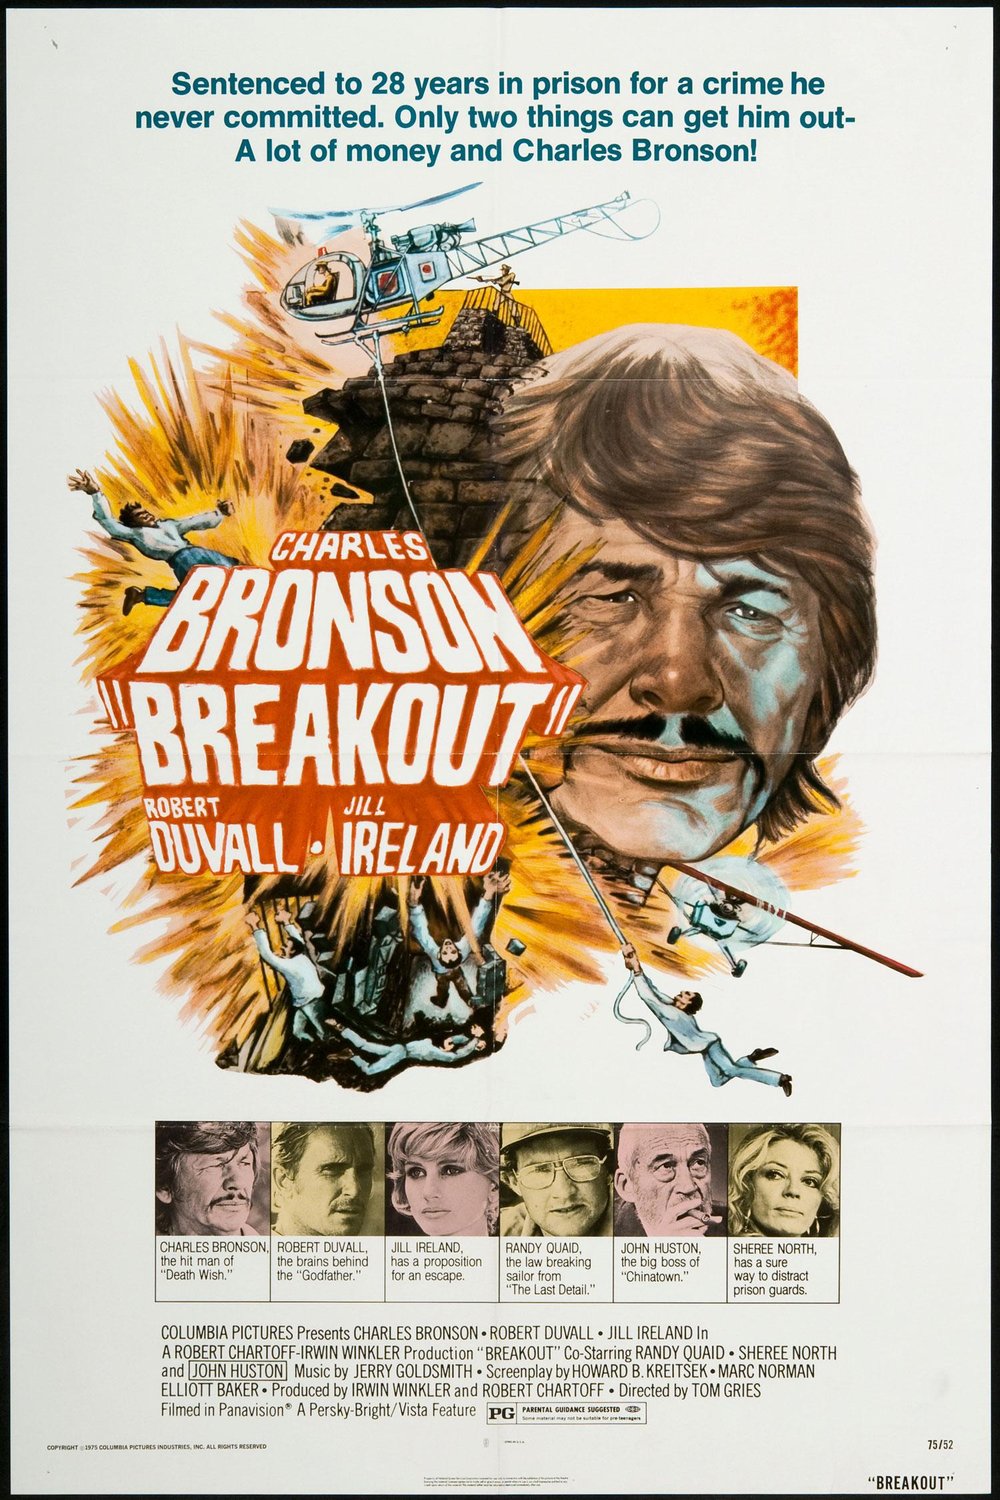 L'affiche du film Breakout